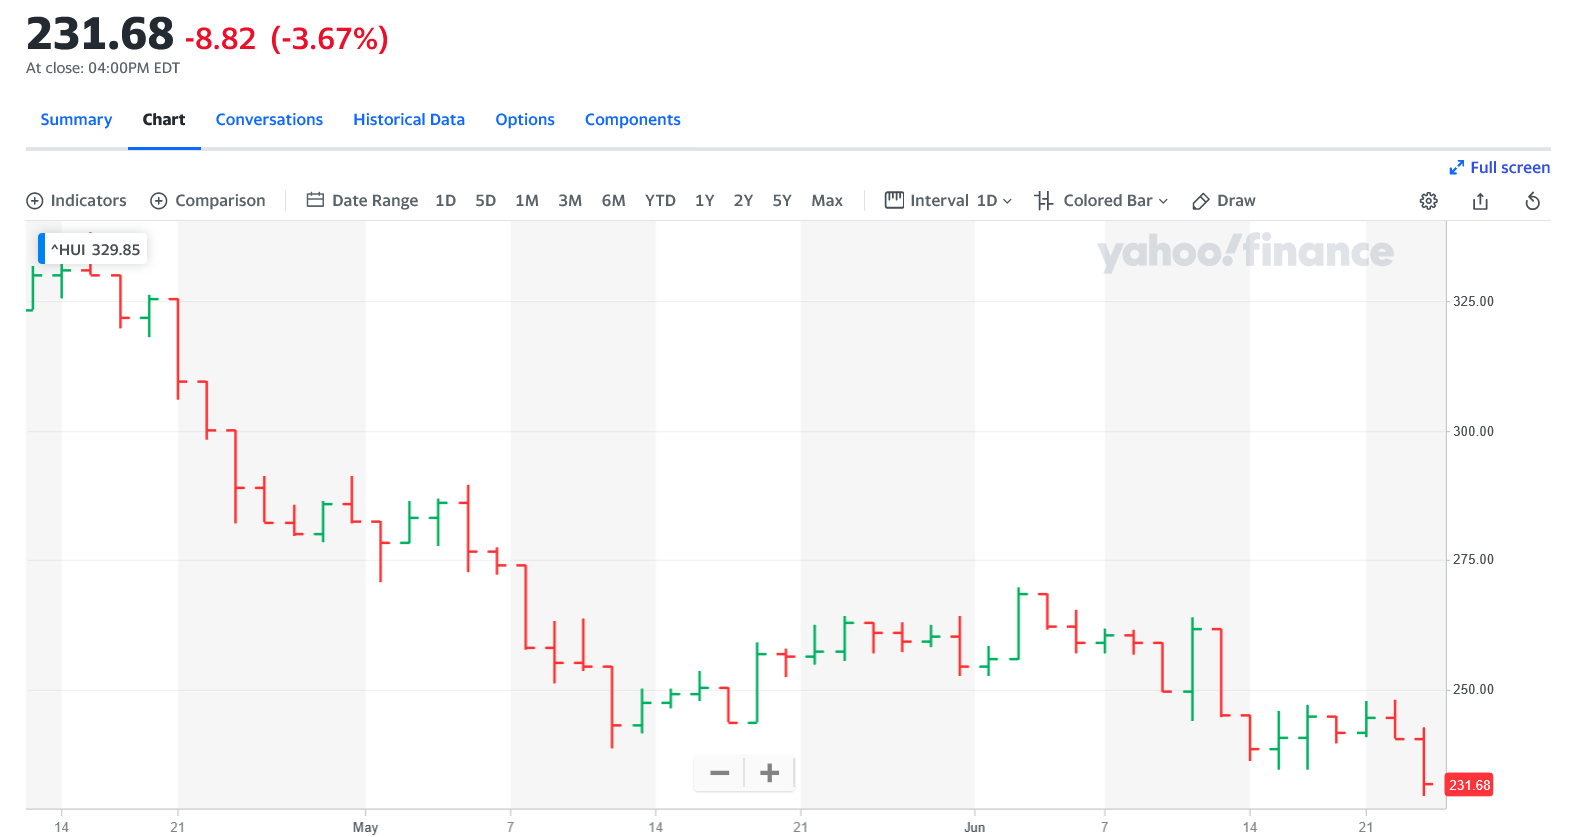 Screenshot 2022-06-23 at 16-38-56 NYSE ARCA GOLD BUGS INDEX (^HUI) Charts Data & News - Yahoo Finance.png